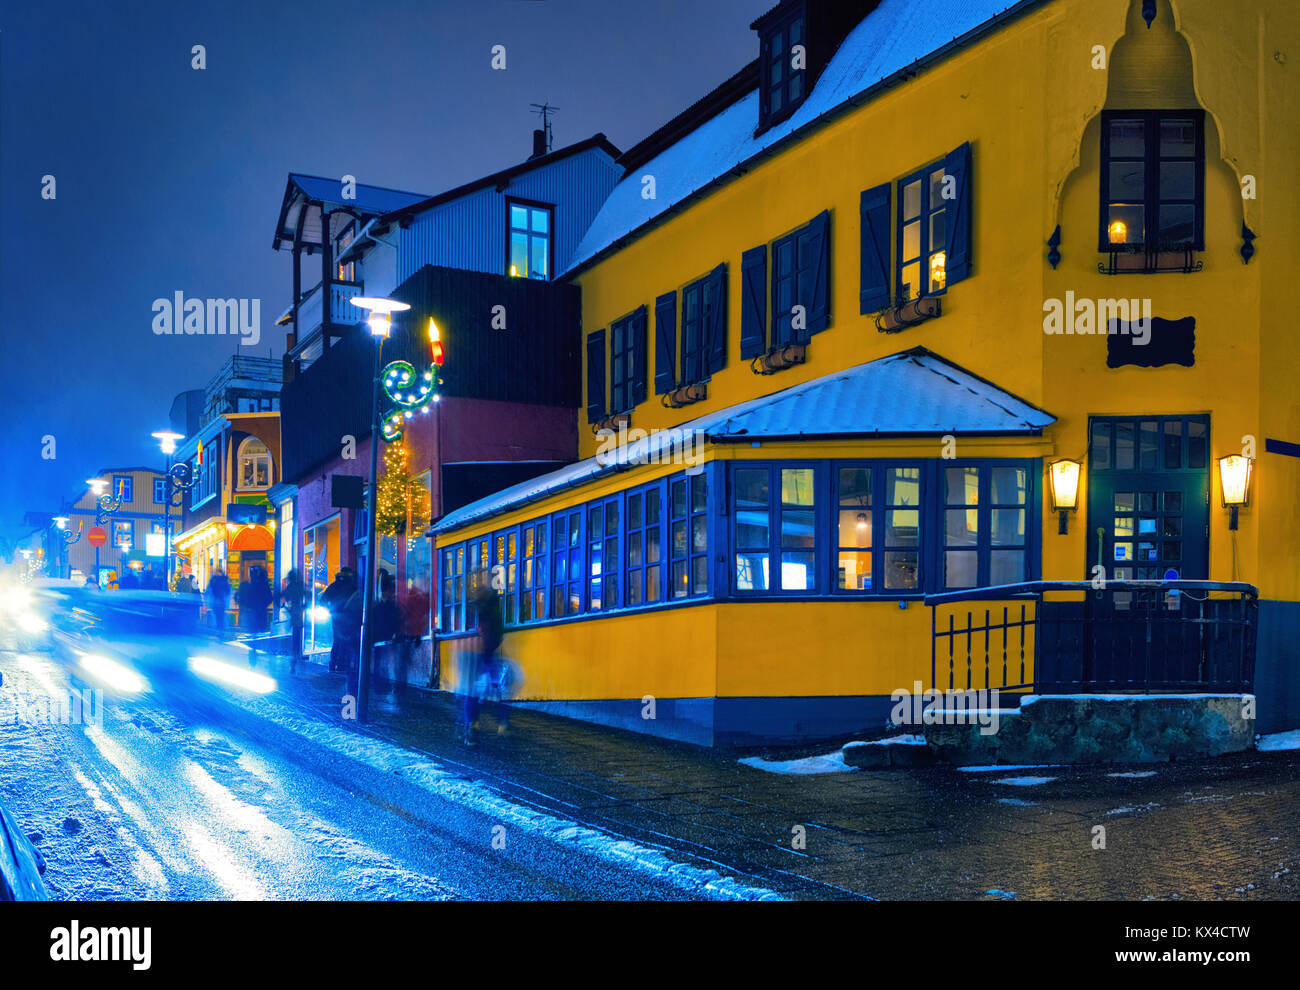 Der laugavegur Street während eines Schneesturmes am späten Abend, Reykjavik, Island. Getonten Bild Stockfoto